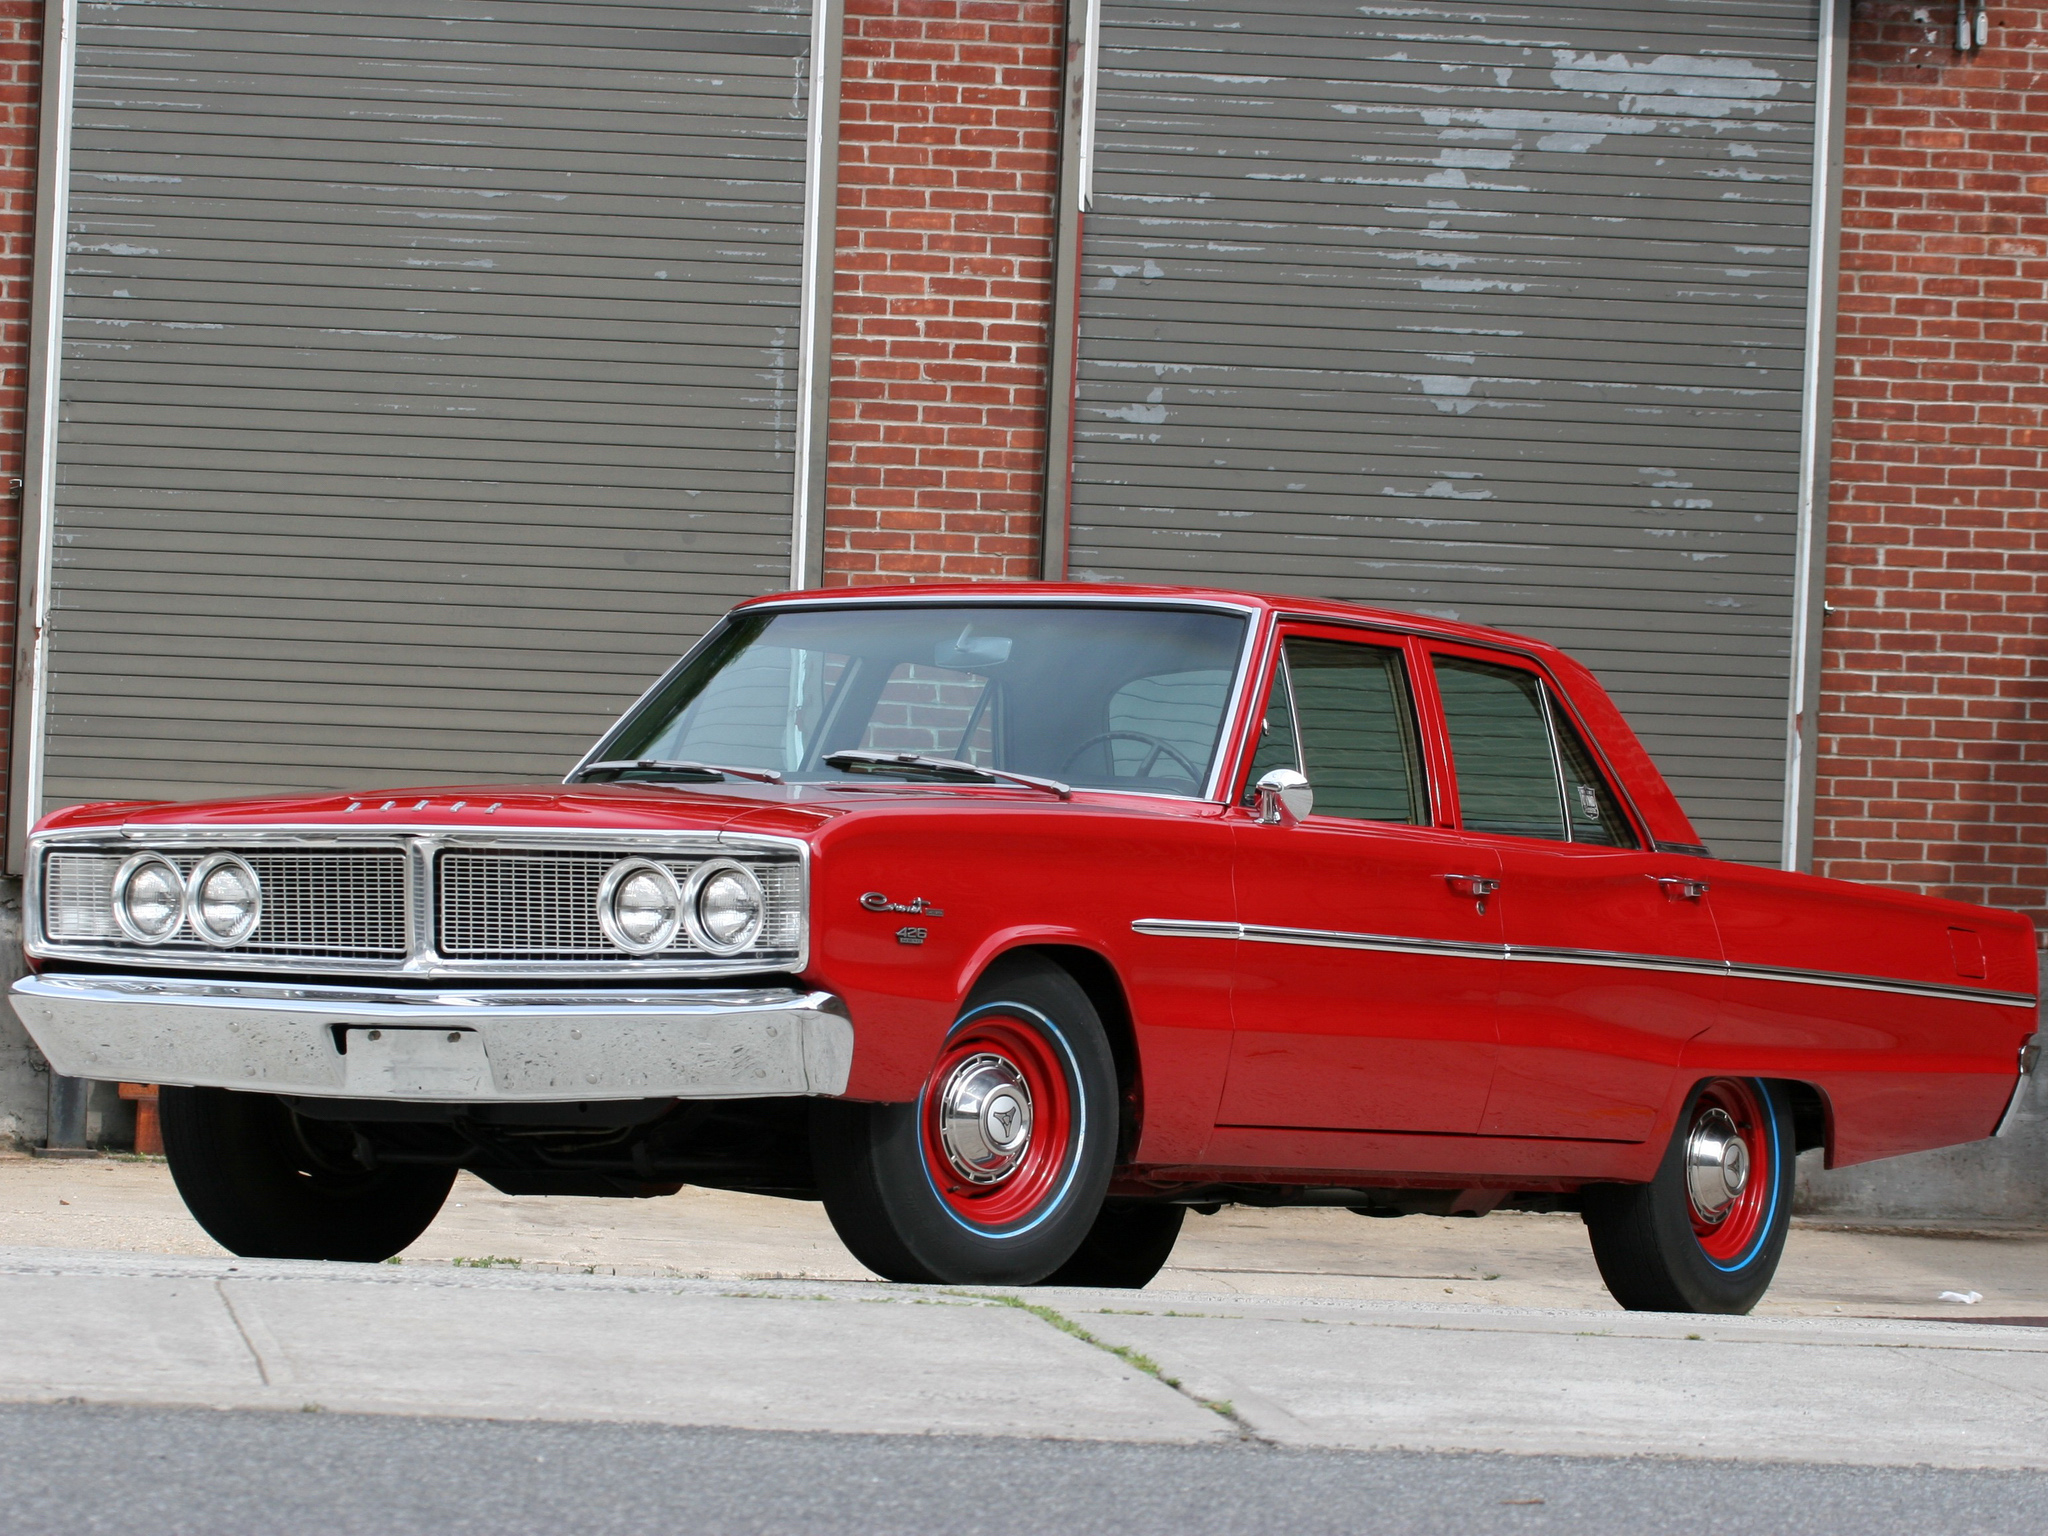 1966, Dodge, Coronet, Deluxe, 426, Hemi, 4 door, Sedan, Muscle, Classic Wallpaper